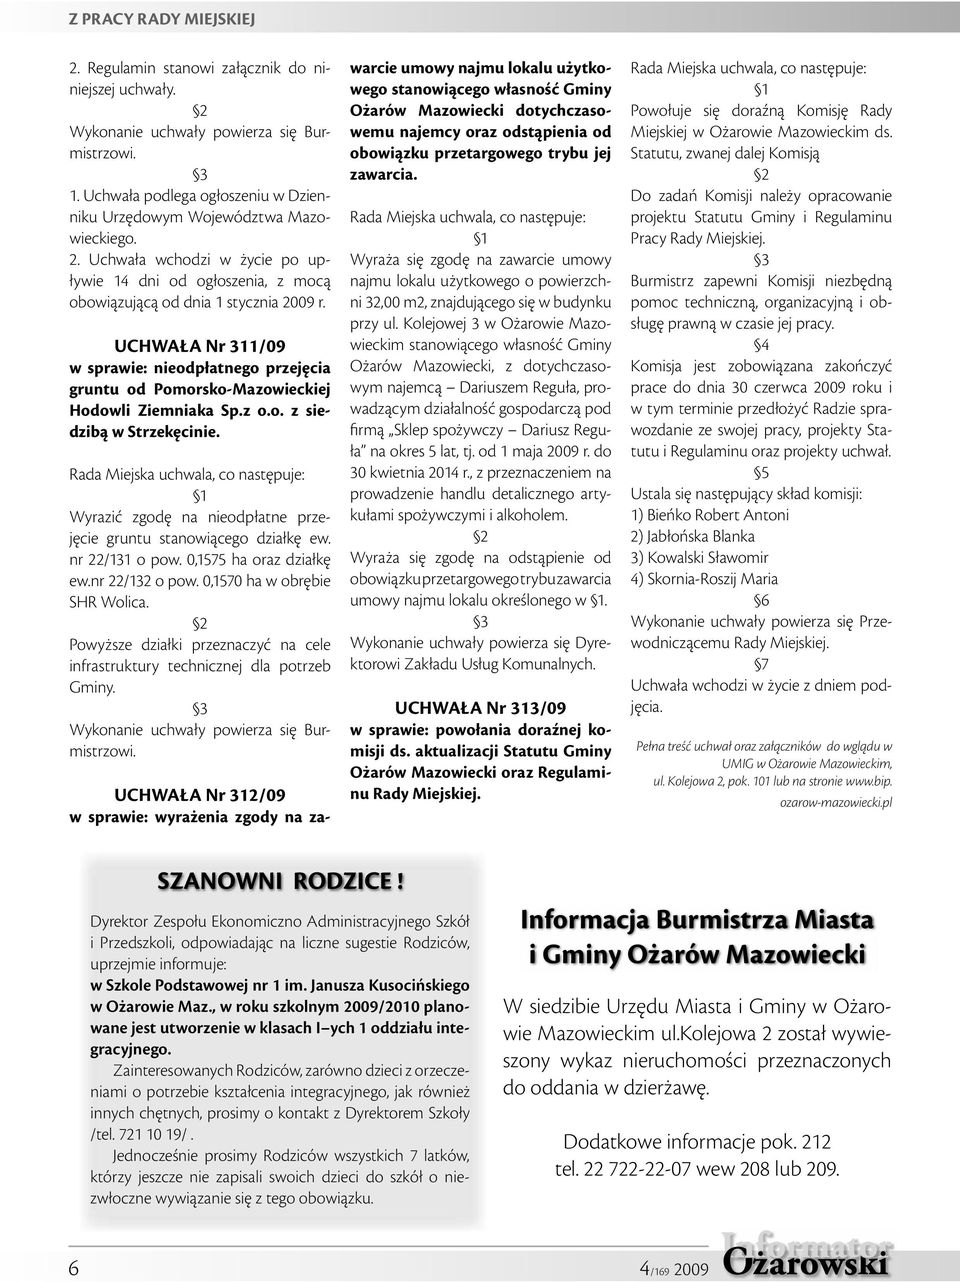 UCHWAŁA Nr 311/09 w sprawie: nieodpłatnego przejęcia gruntu od Pomorsko-Mazowieckiej Hodowli Ziemniaka Sp.z o.o. z siedzibą w Strzekęcinie.